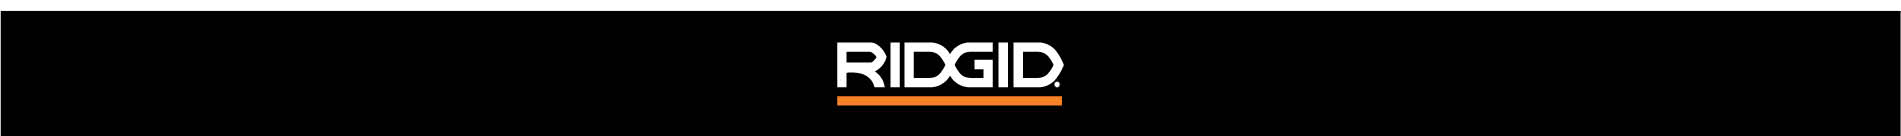 Banner de la marca RIDGID